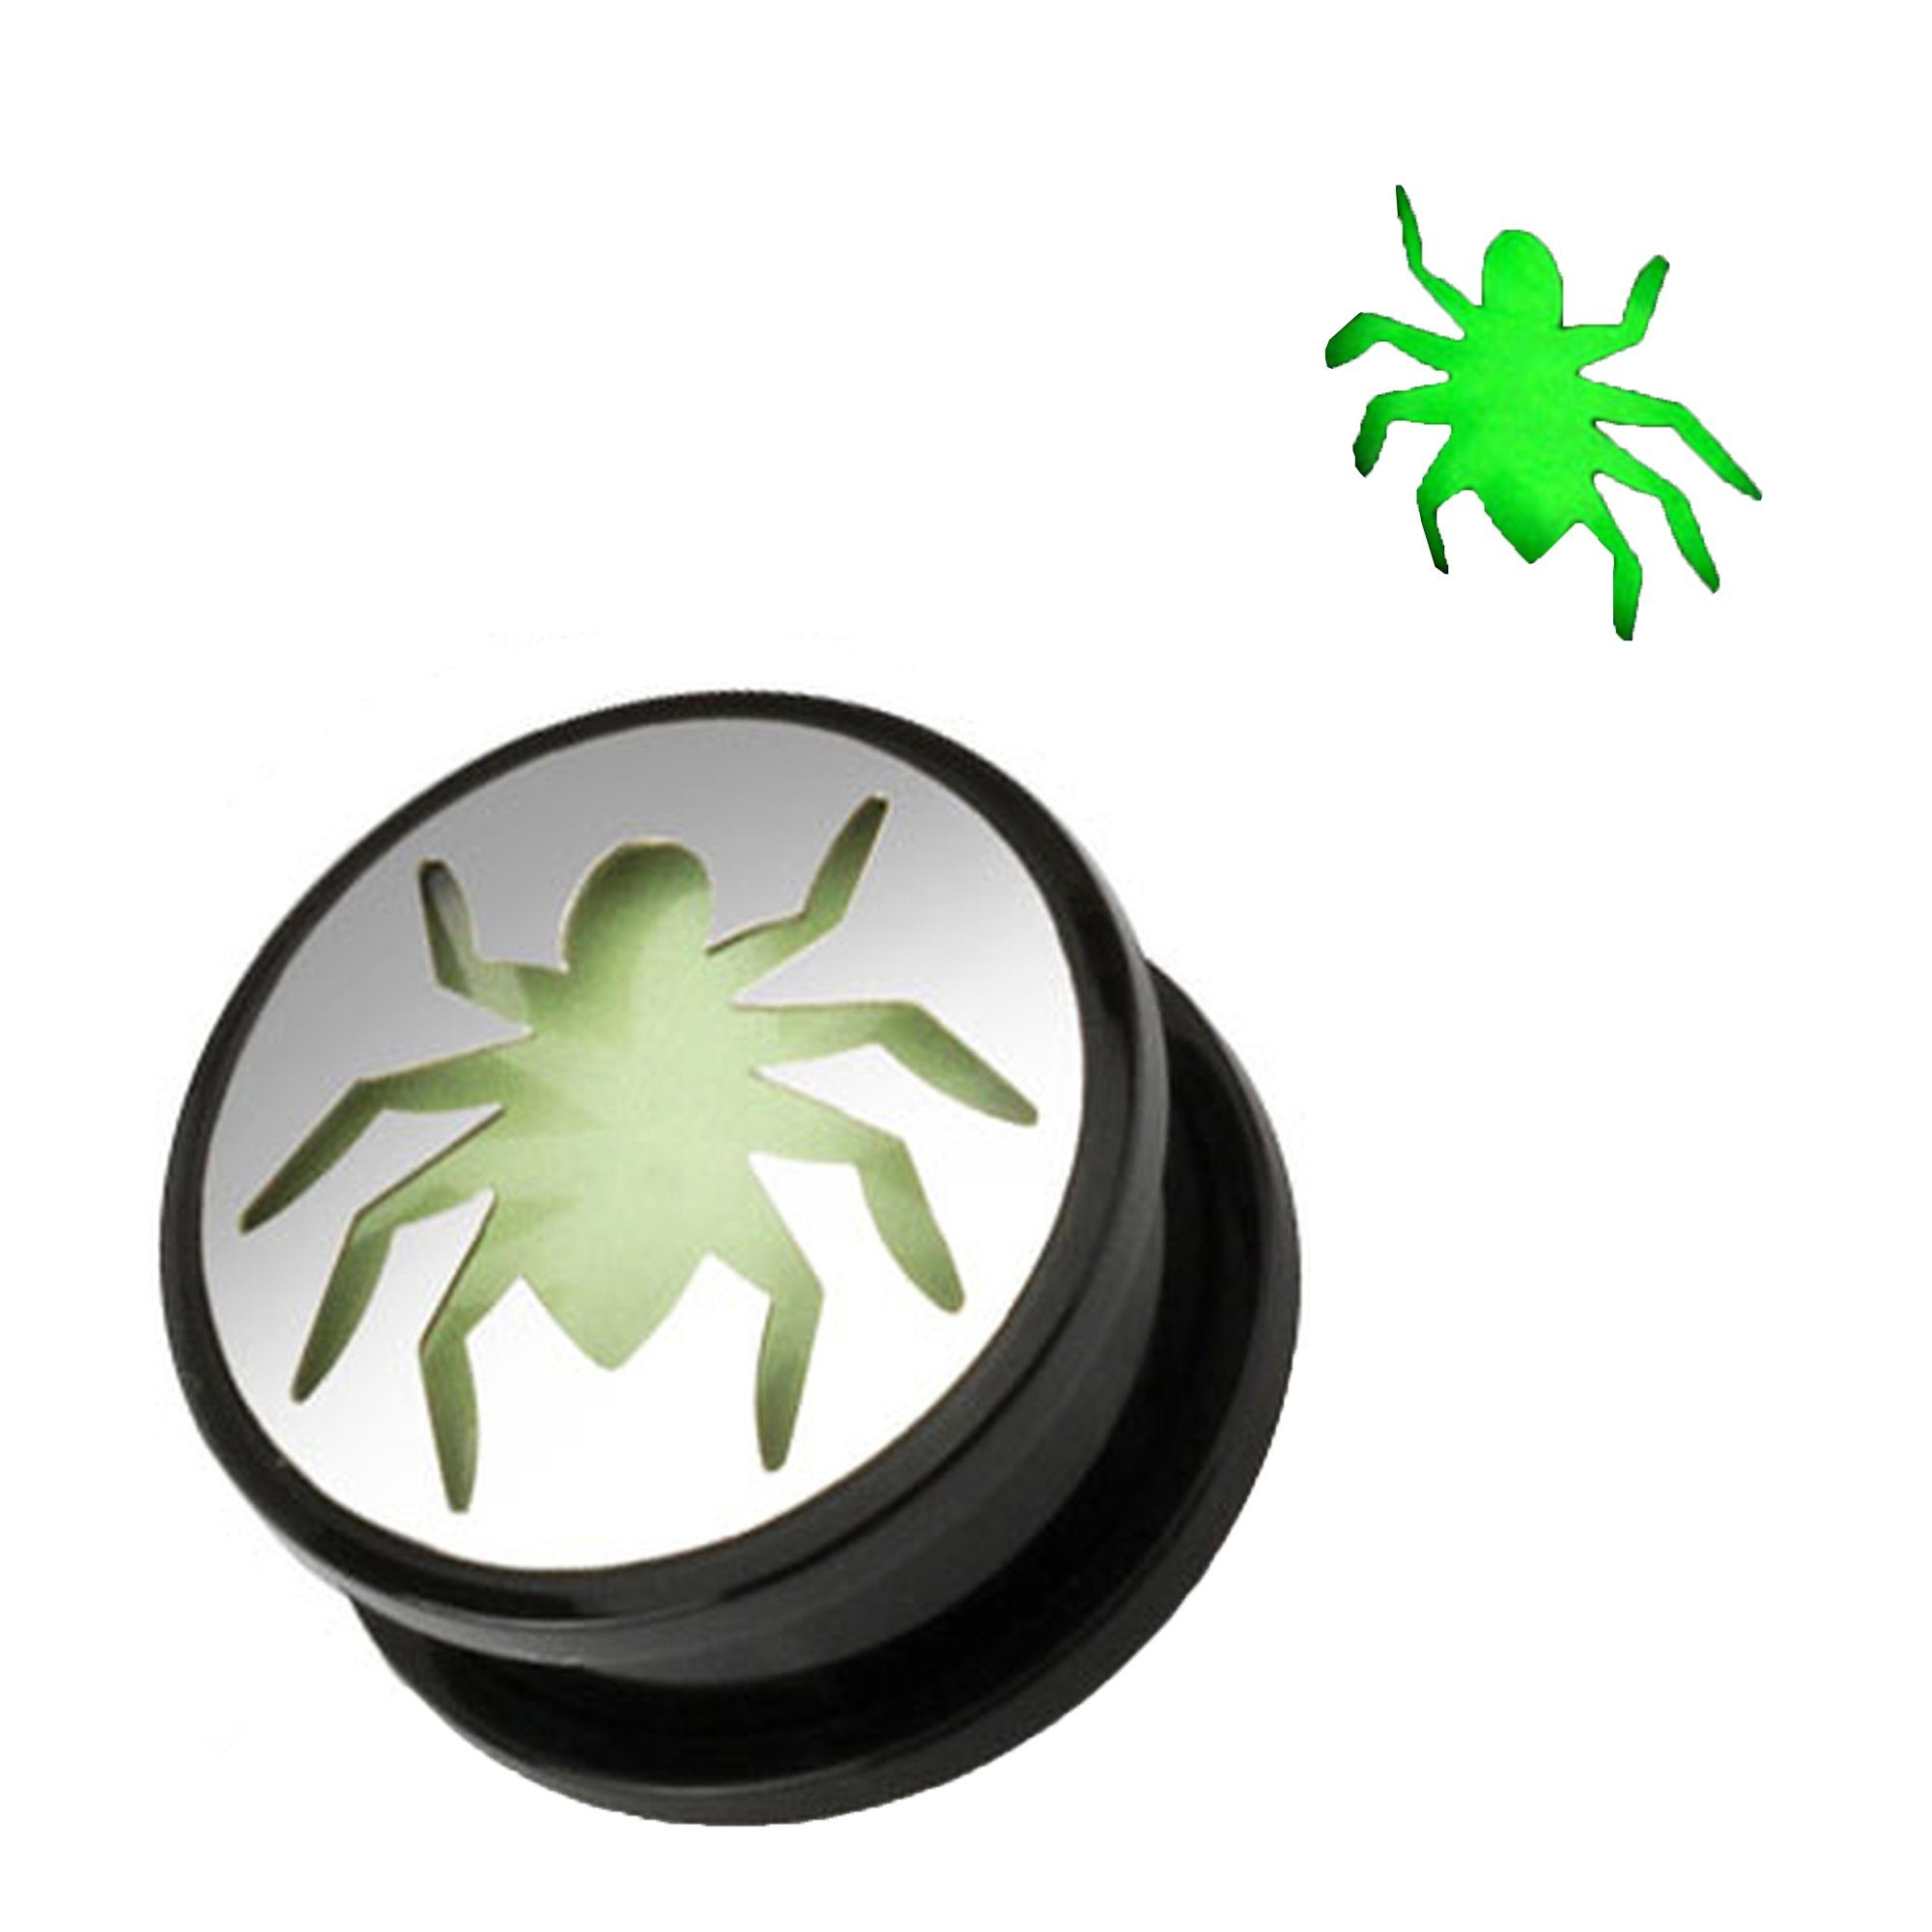 Kunststoff Taffstyle Plug Ohr Dark Spinne Spider Glow Schraubverschluß Ohrpiercing Piercing Schraub Tunnel Dark, Plug Glow Motiv Flesh